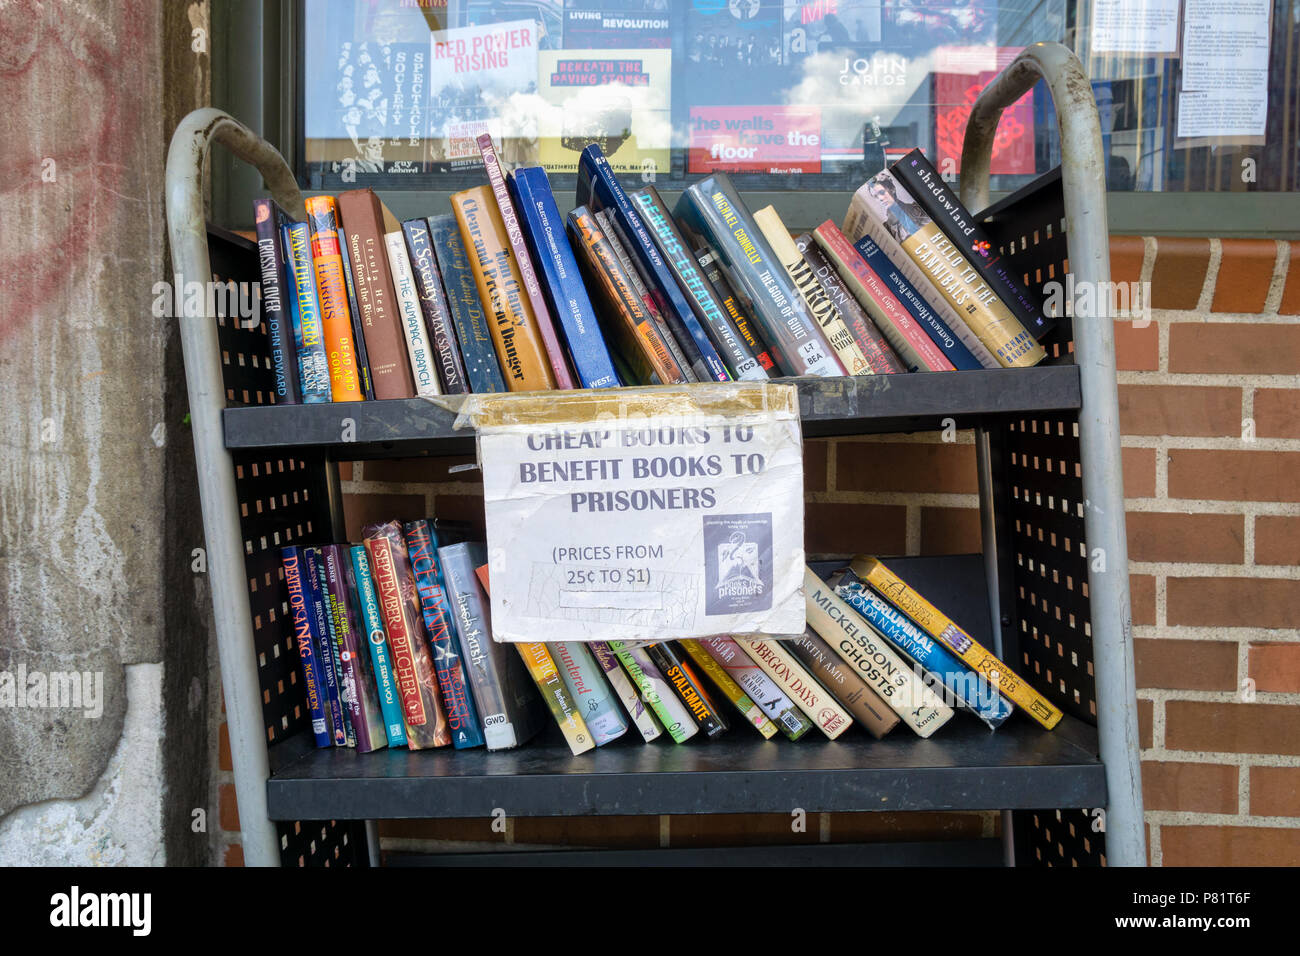 Filas de libros baratos una estantería metálica para beneficiar a los libros a los presos, Seattle, Estados Unidos. Foto de stock